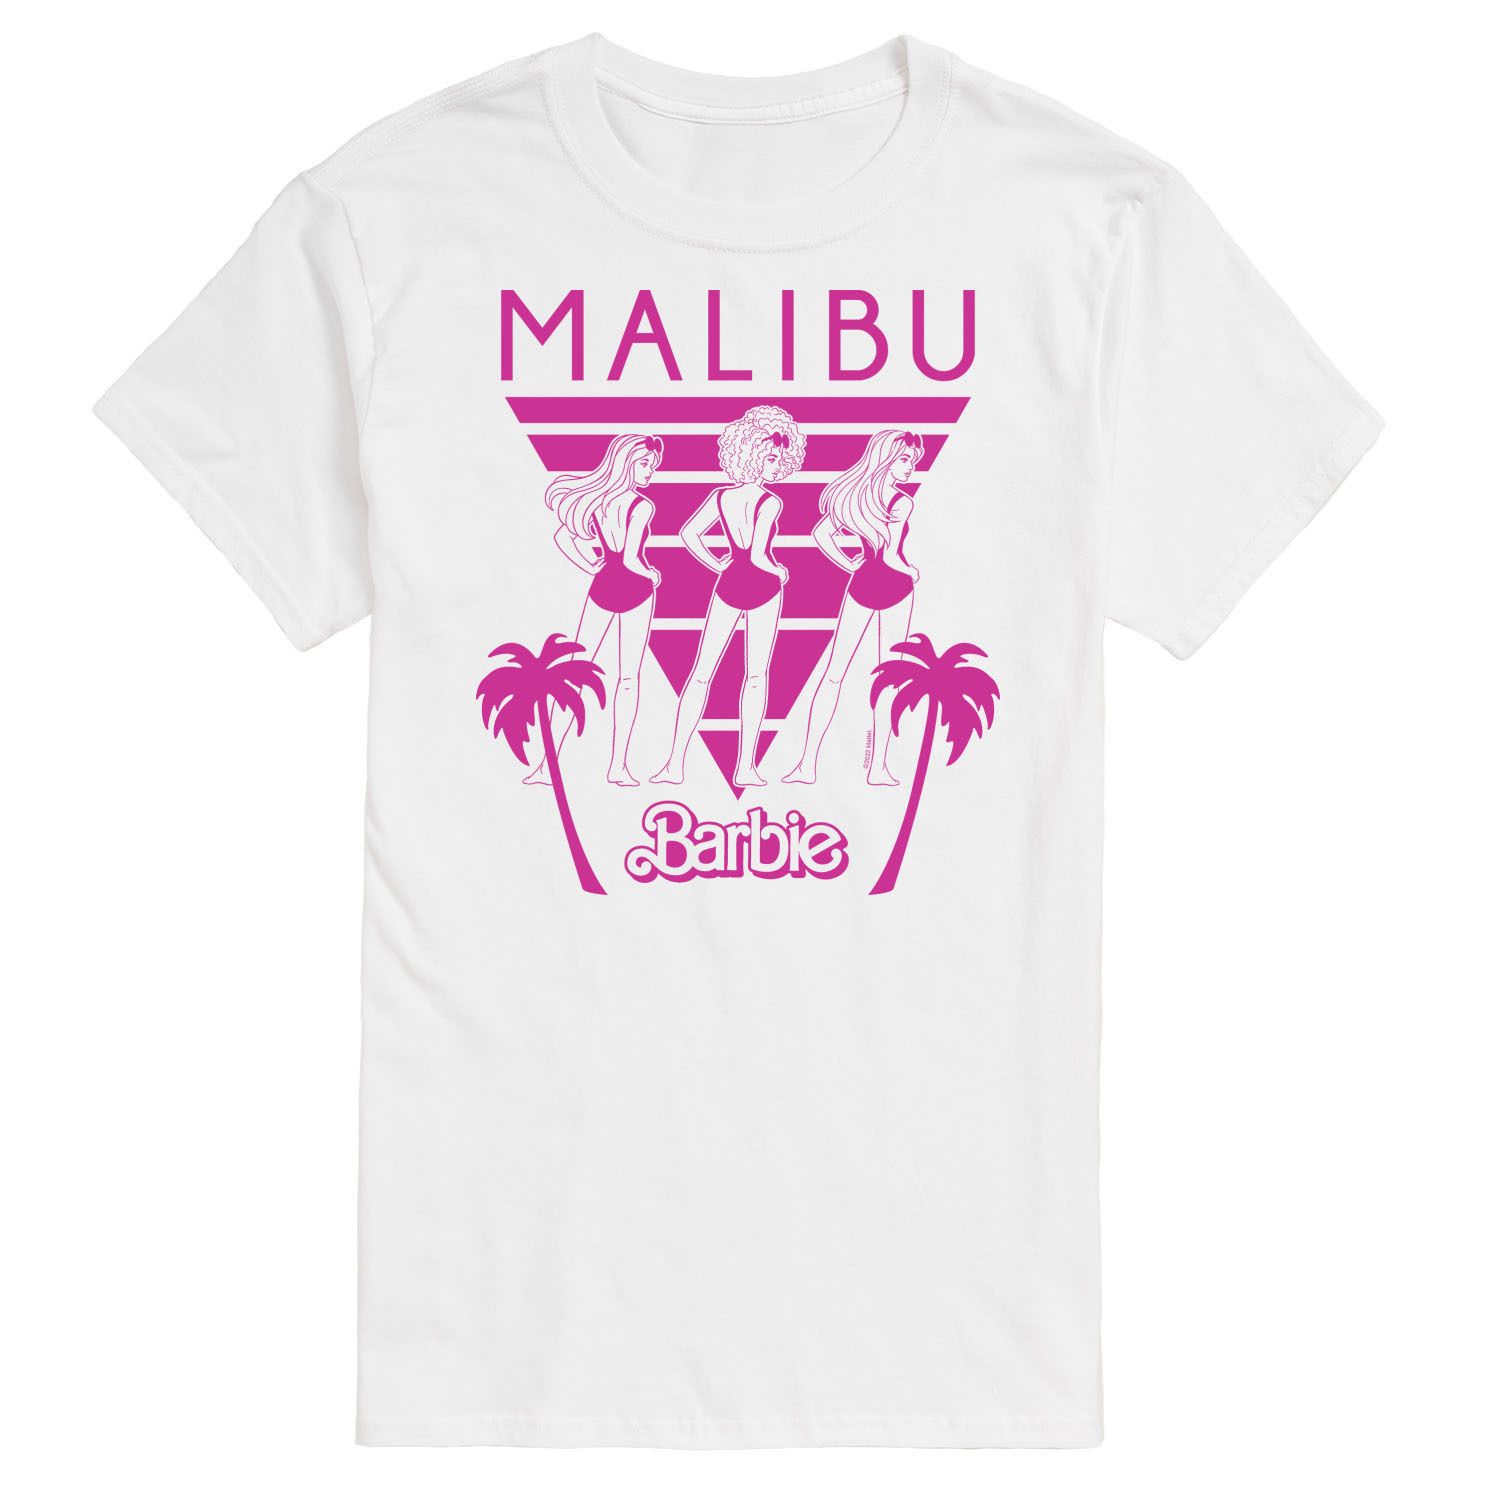 Футболка Big & Tall Malibu с рисунком Barbie